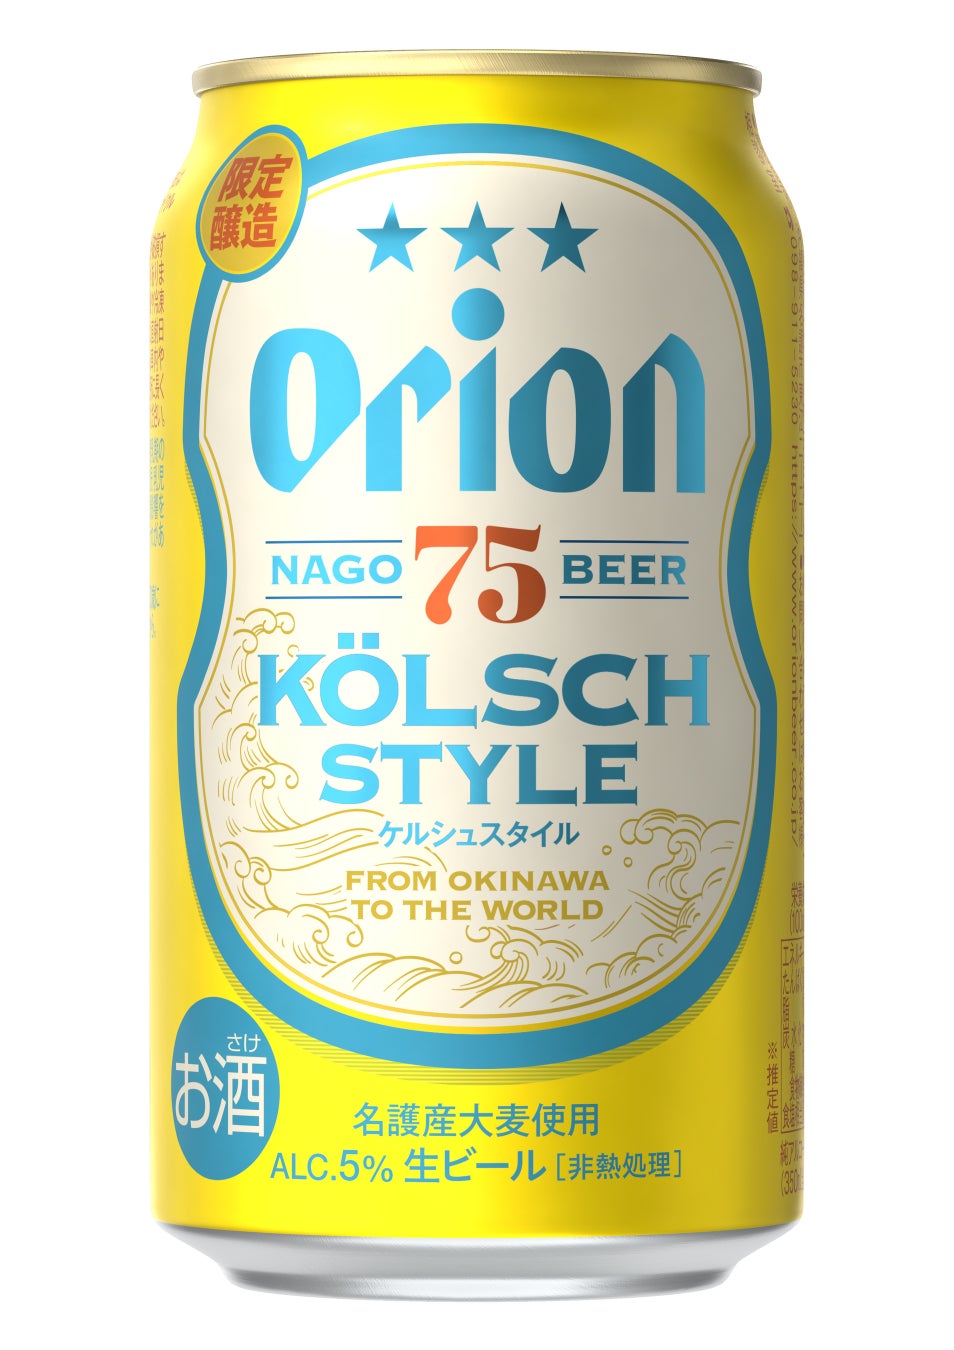 真夏にピッタリなクラフトビール「75BEER ＜ケルシュスタイル＞」を数量限定で発売